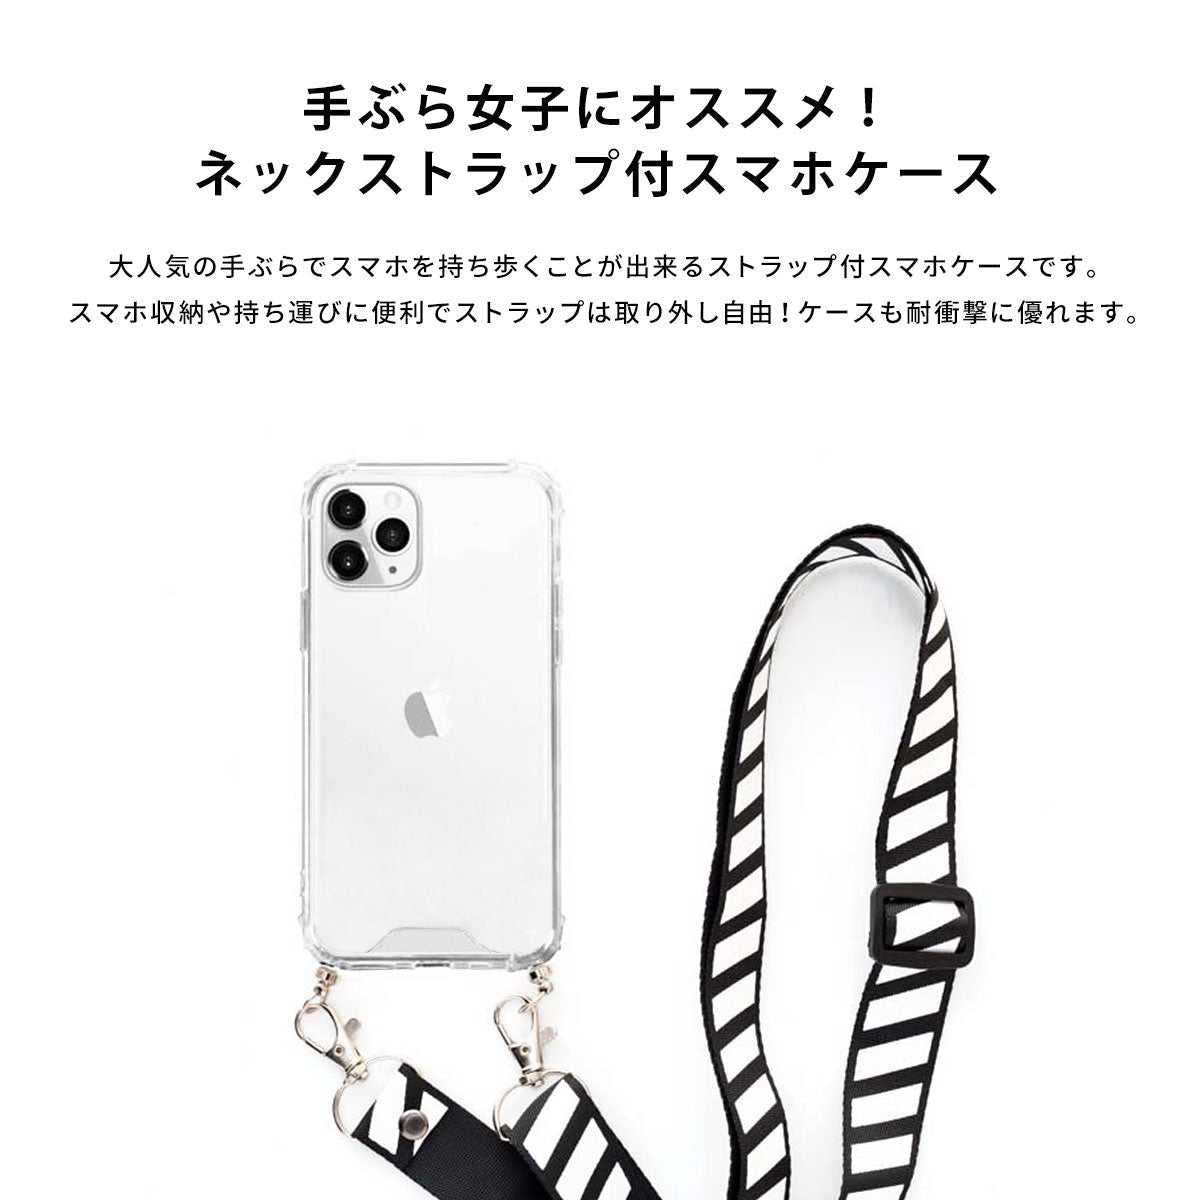 【手ぶら派に】ネックストラップ スマホケース  iPhone13 iPone12 かわいい おしゃれ  ネックストラップ付き ボタニカル 植物 花 名入れ